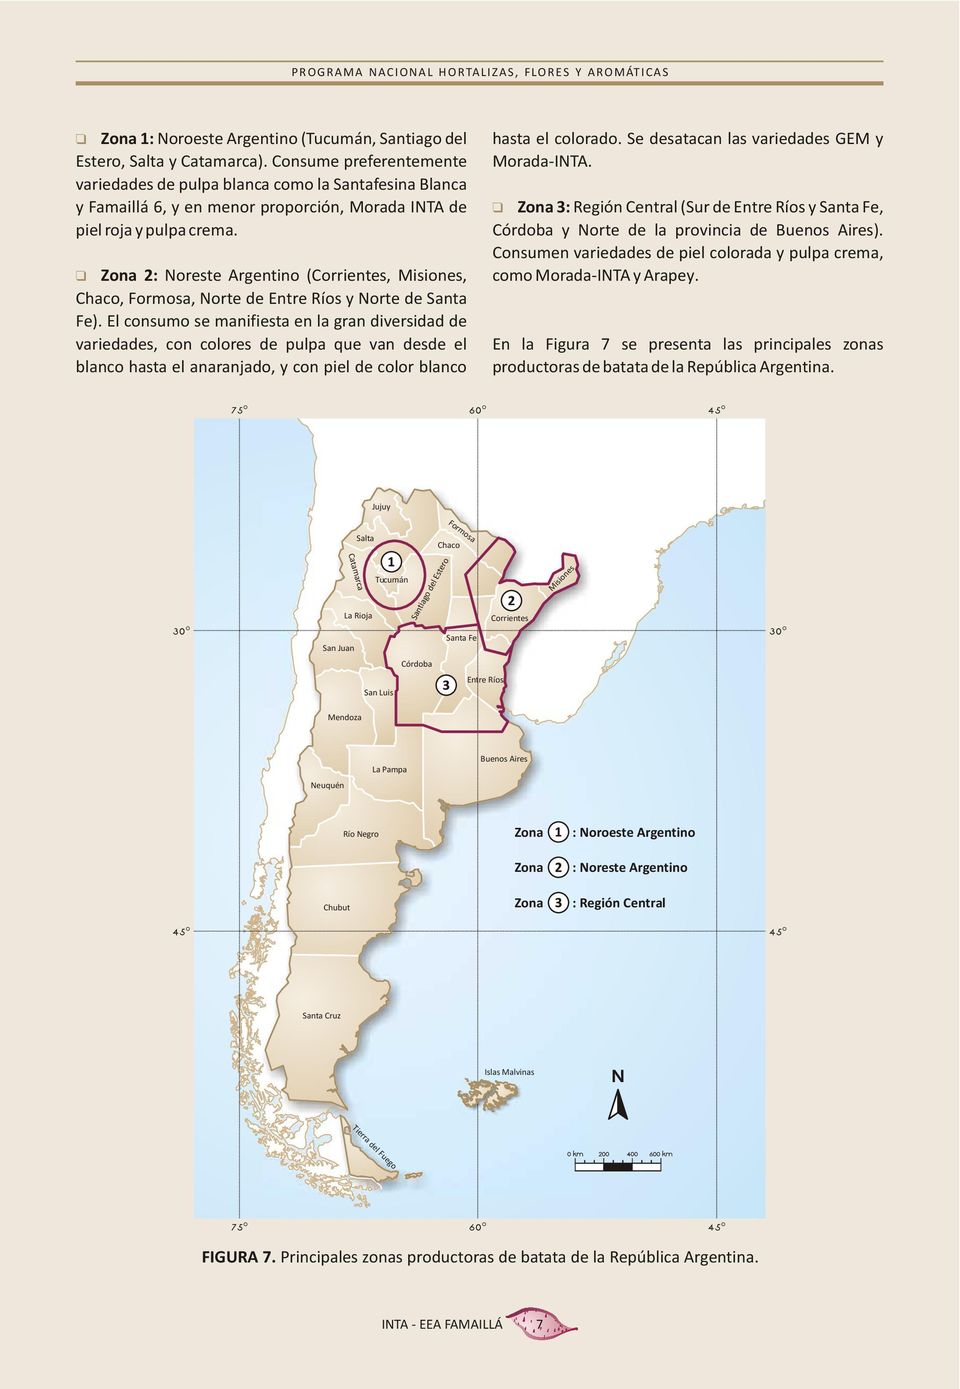 Zona 2: Noreste Argentino (Corrientes, Misiones, Chaco, Formosa, Norte de Entre Ríos y Norte de Santa Fe).